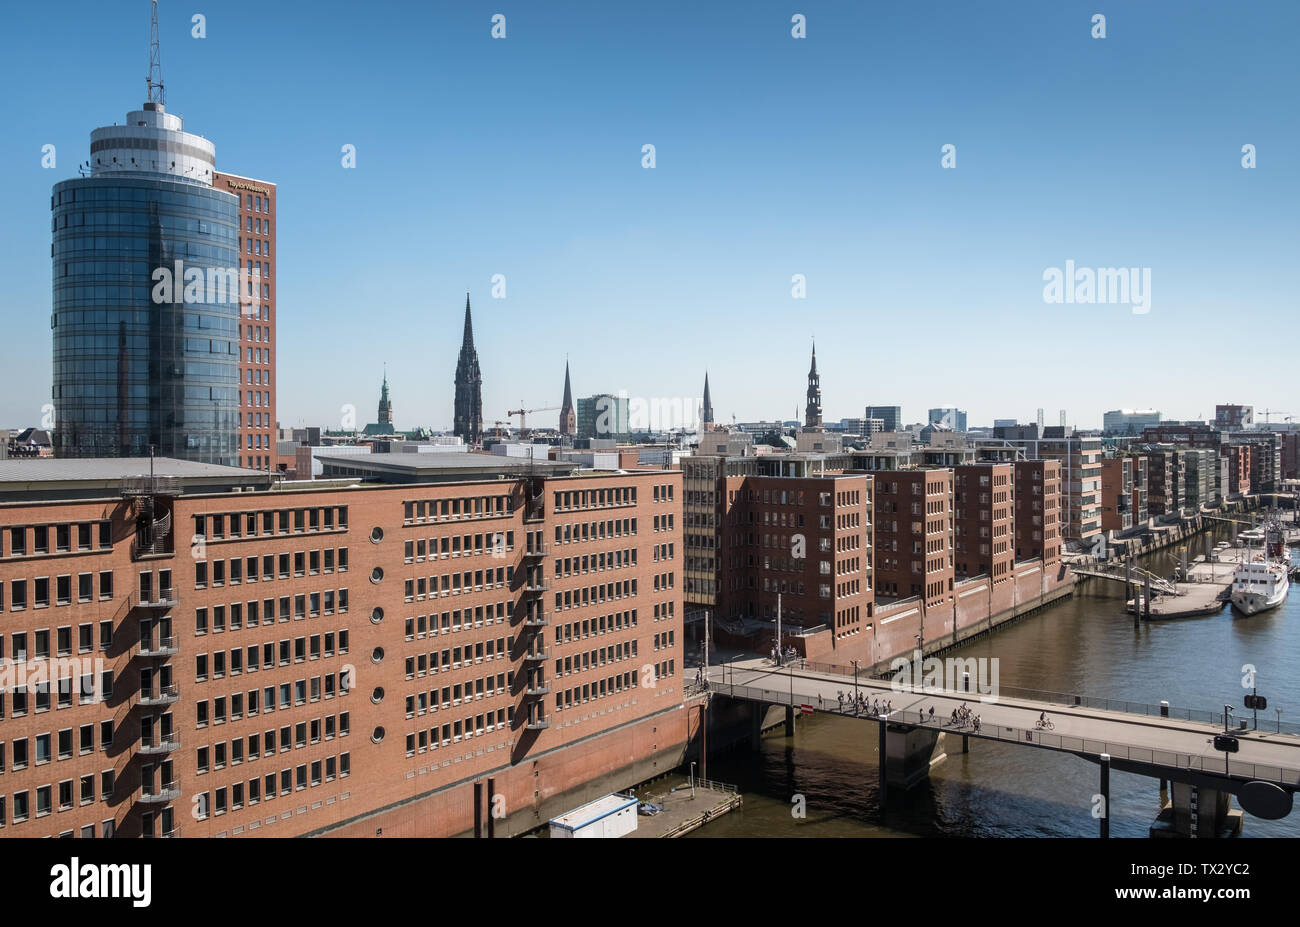 Ansicht der Am Sandtorkai, mit Santorhafen Hafen neben, Speicherstadt, HafenCity, Hamburg, Deutschland Stockfoto